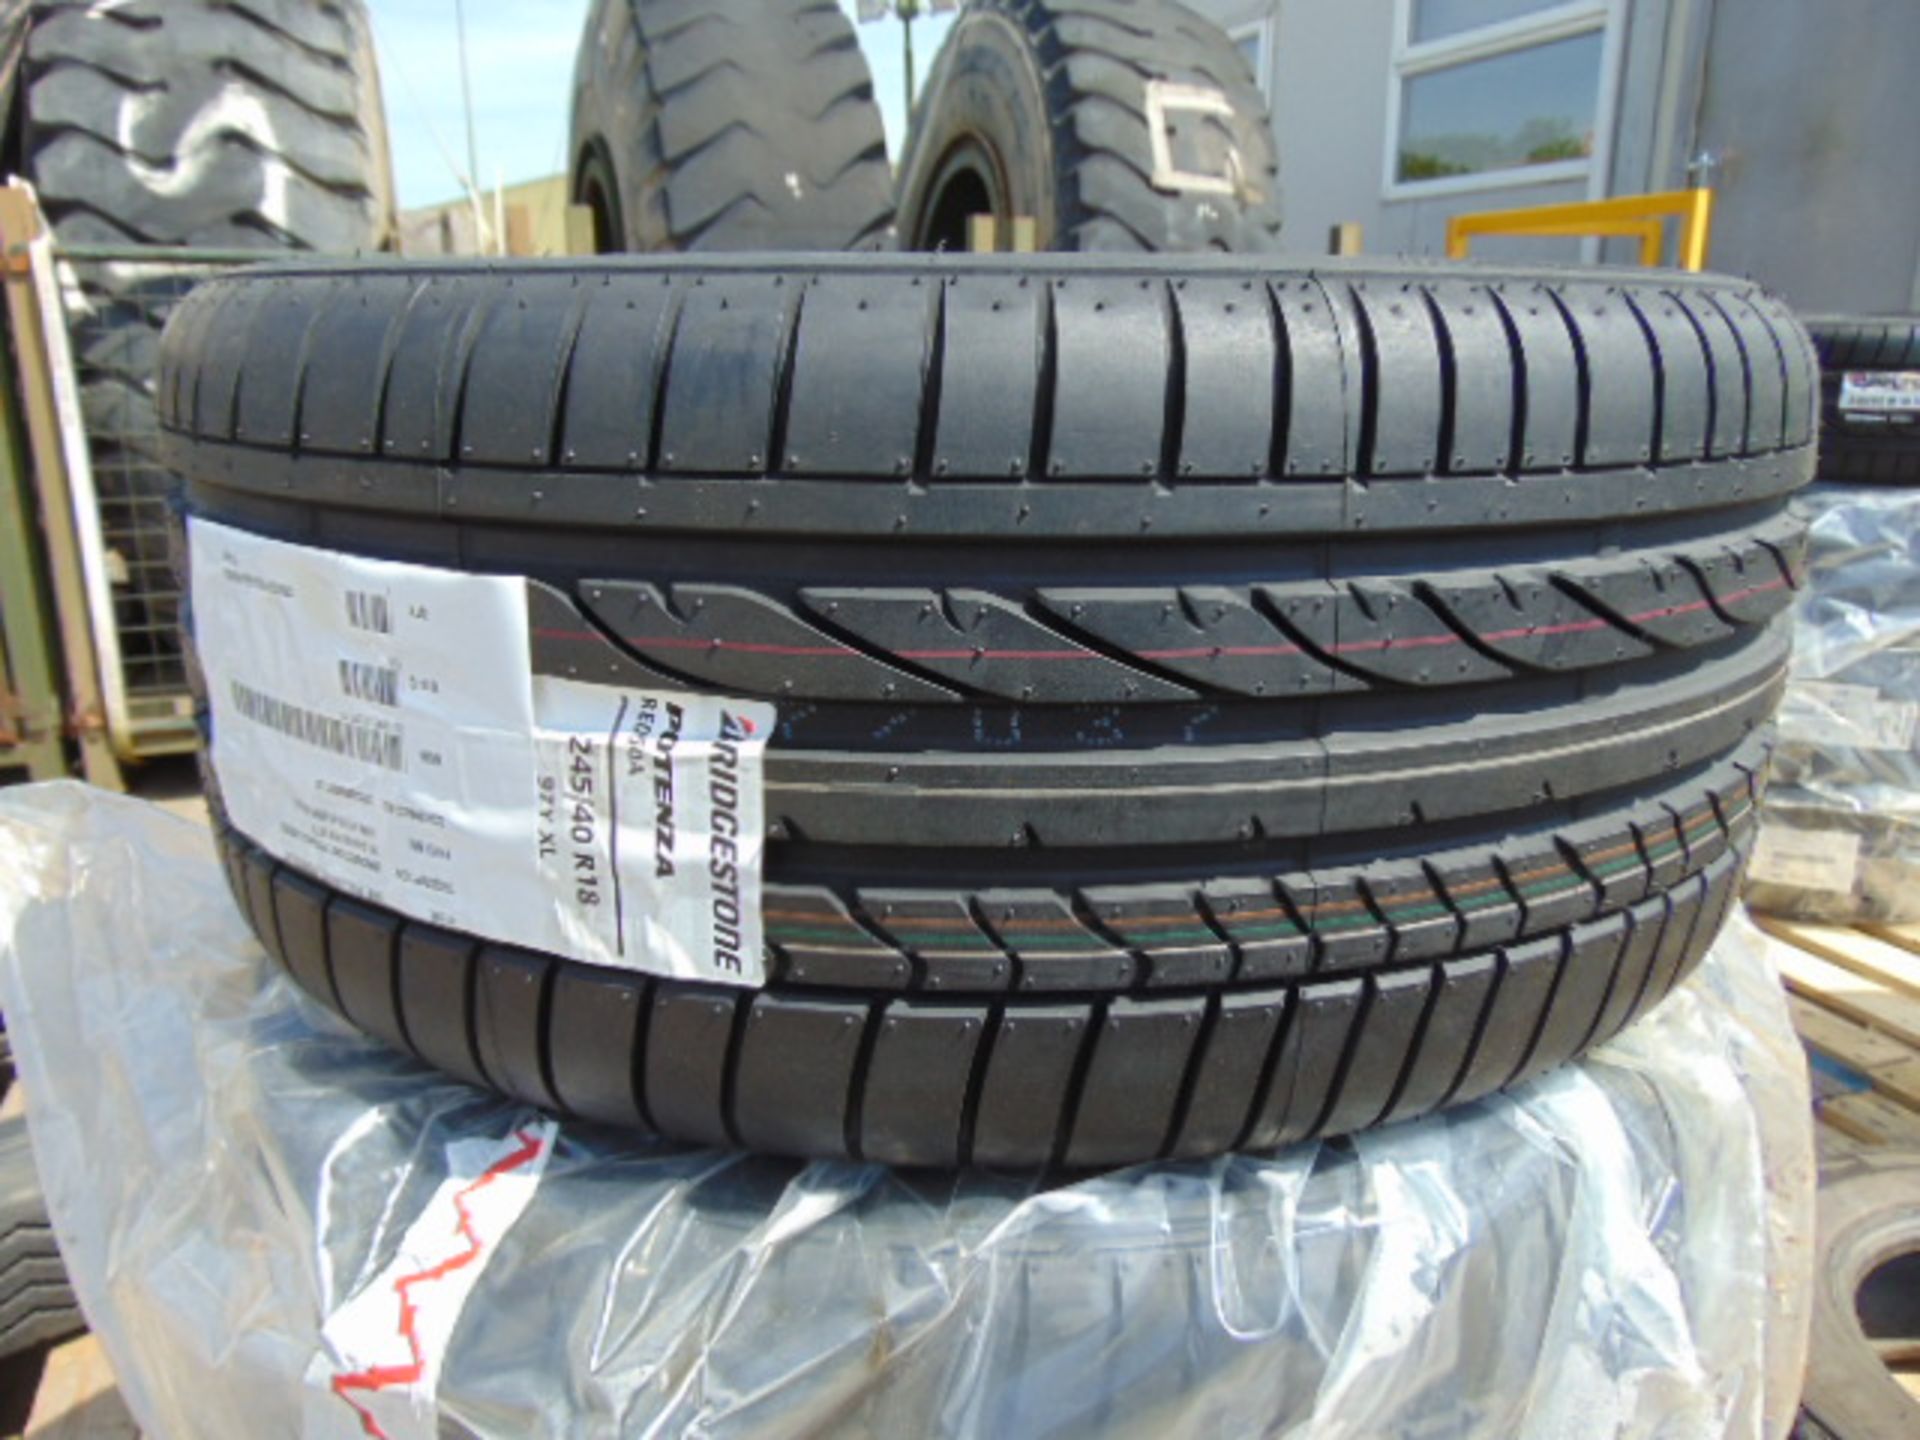 4 x Bridgestone Potenza 245/40 R18 97Y XL Tyres - Image 2 of 6